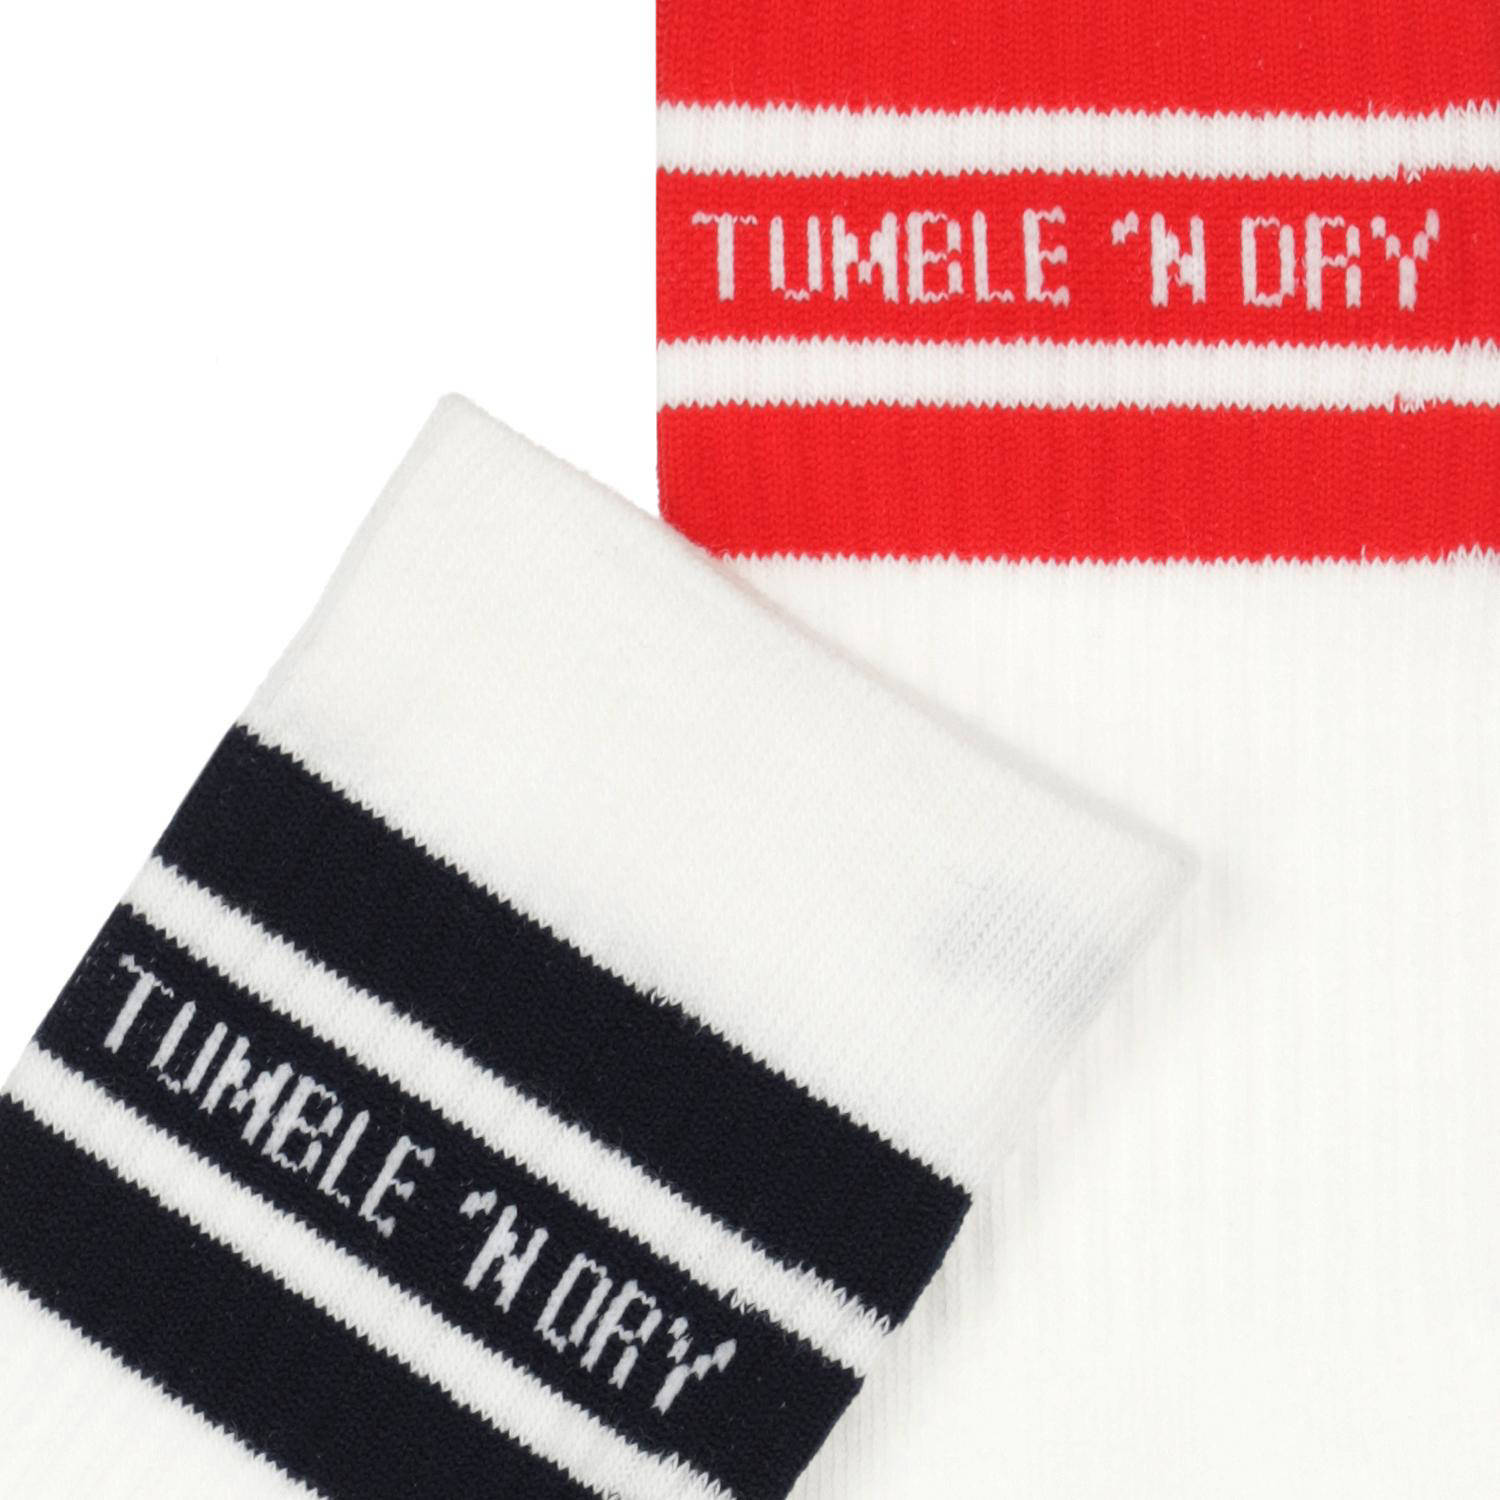 Tumble 'n Dry sokken set van 2 paar wit rood zwart met streep